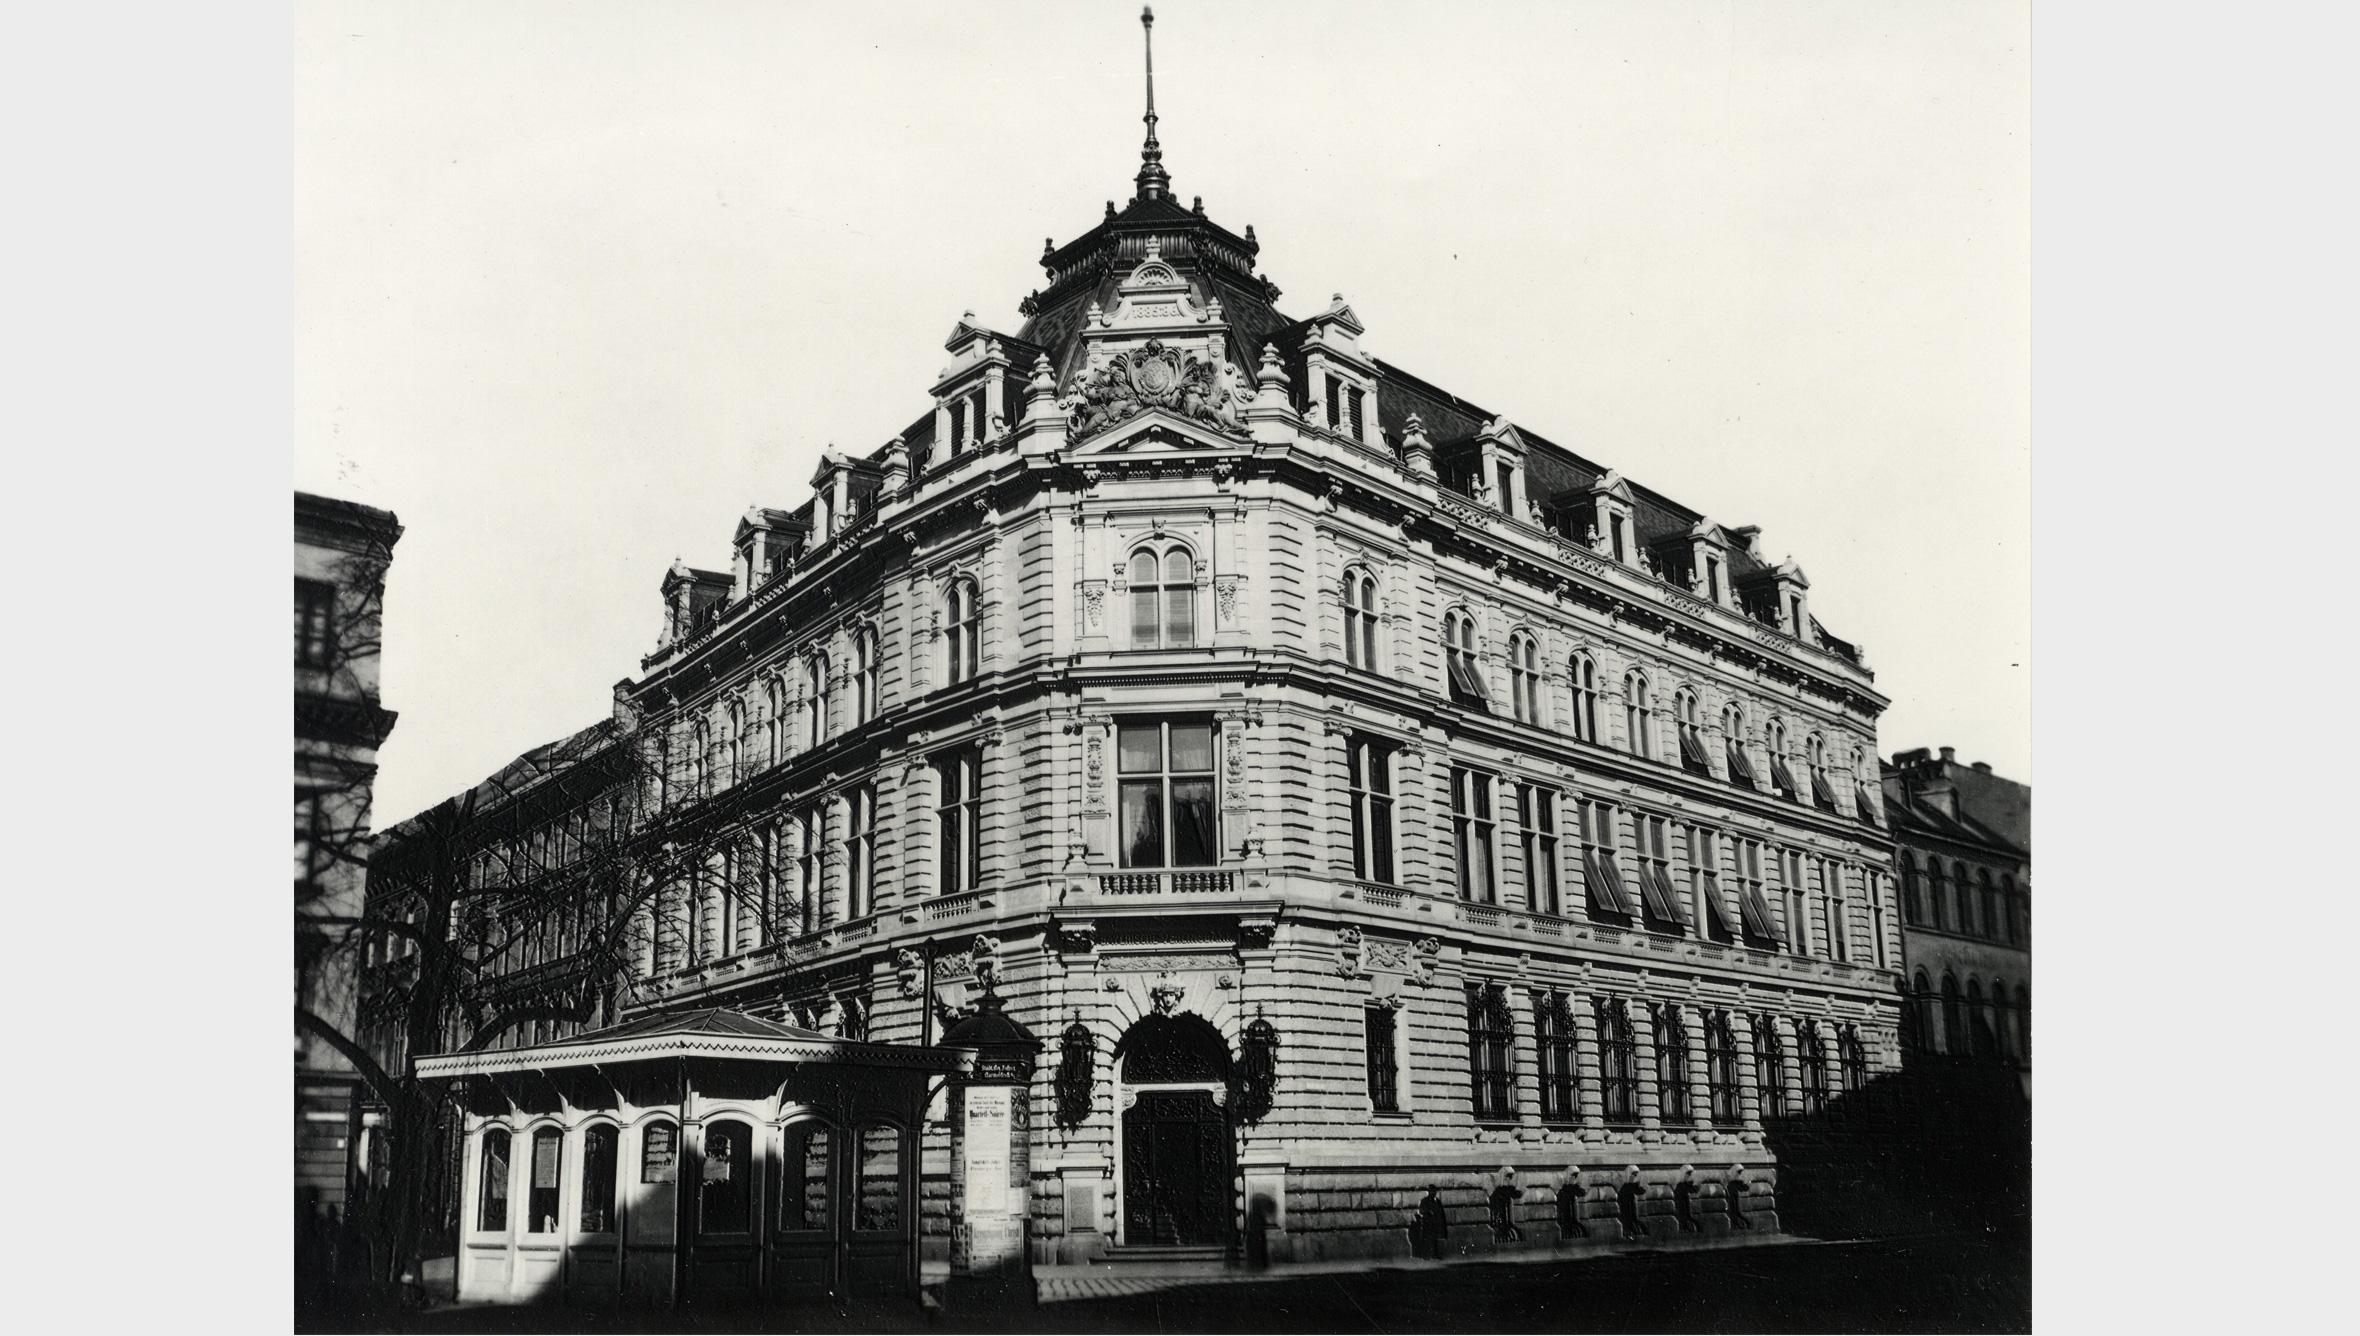 Die Raumnot in der Prannerstraße 5 bewog die Bayerische Vereinsbank, 1872 in das Castellhaus am Promenadeplatz umzuziehen. Am 18. Oktober 1886 bezog die Bayerische Vereinsbank ihren repräsentativen Neubau in der Promenadestraße 14.